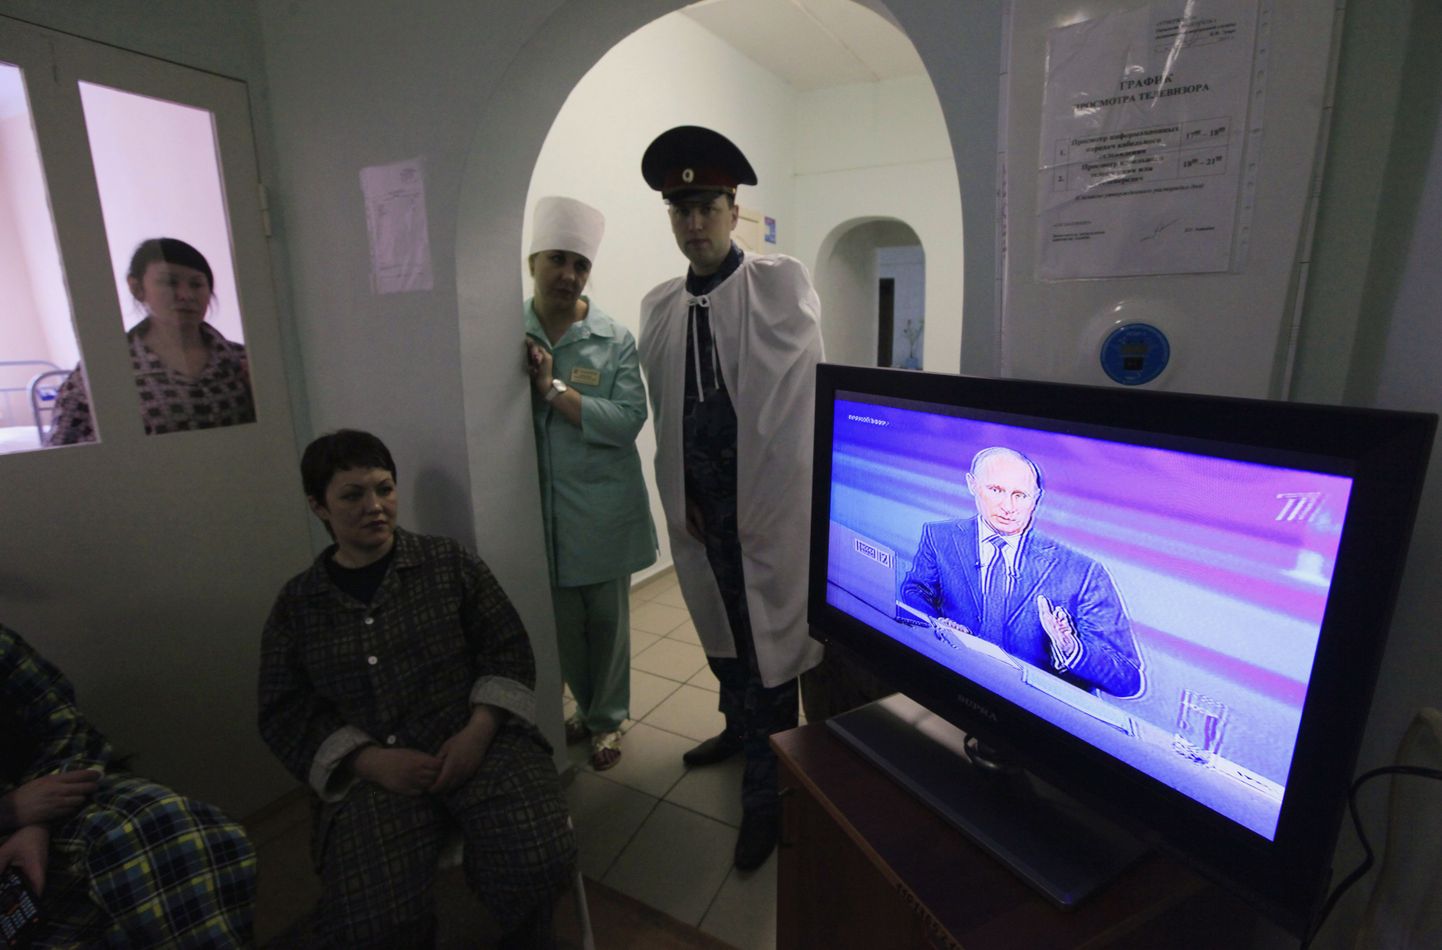 Krasnojarski vangla tuberkuloosihaigla patsiendid ja personal vaatavad Putini esinemise otseülekannet.